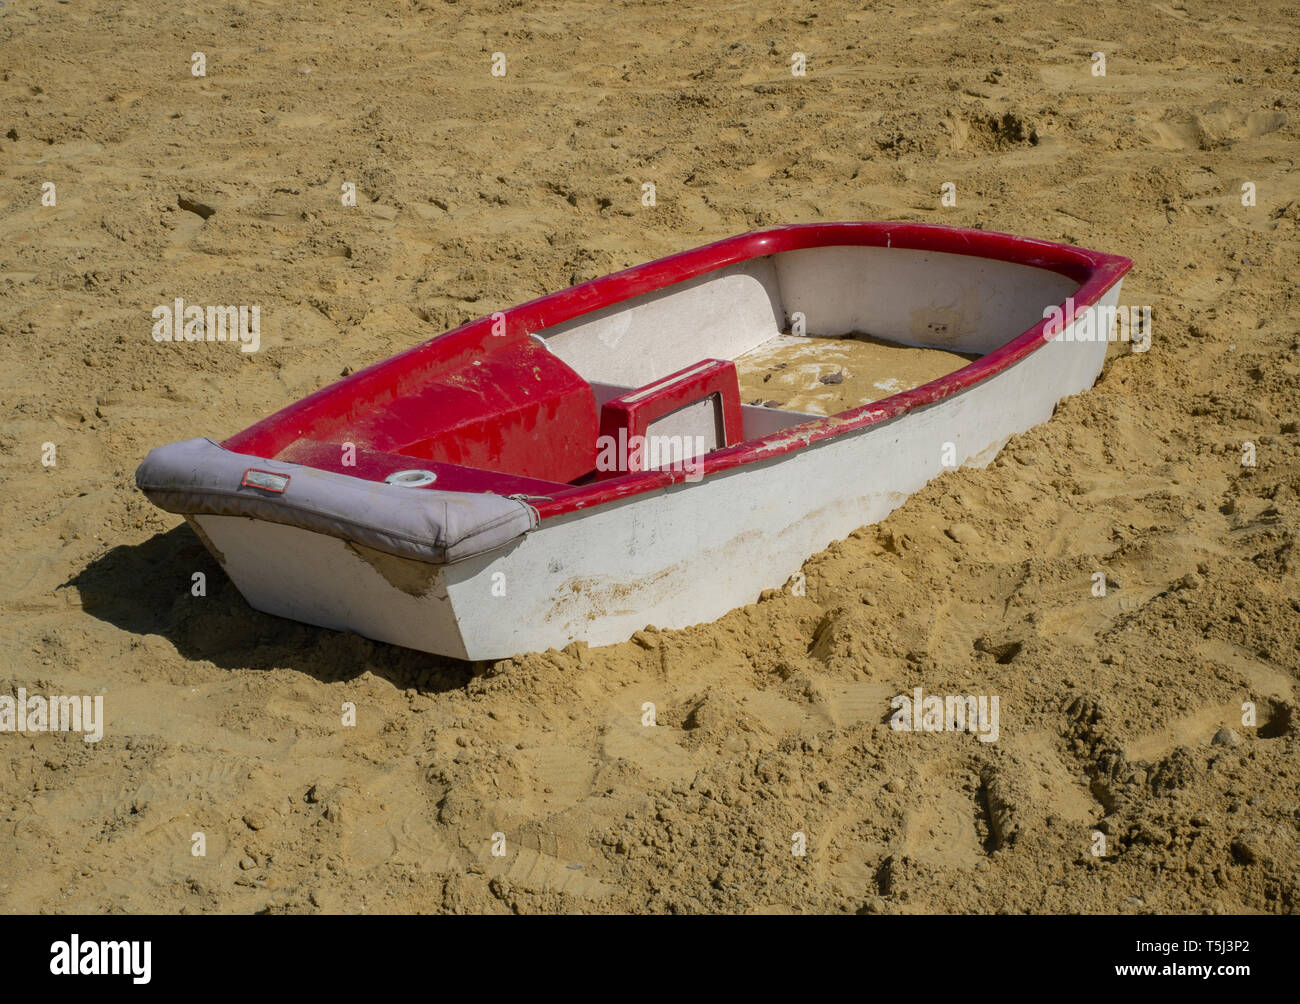 Kleines Boot im Sandkasten Litze Stockfotografie - Alamy